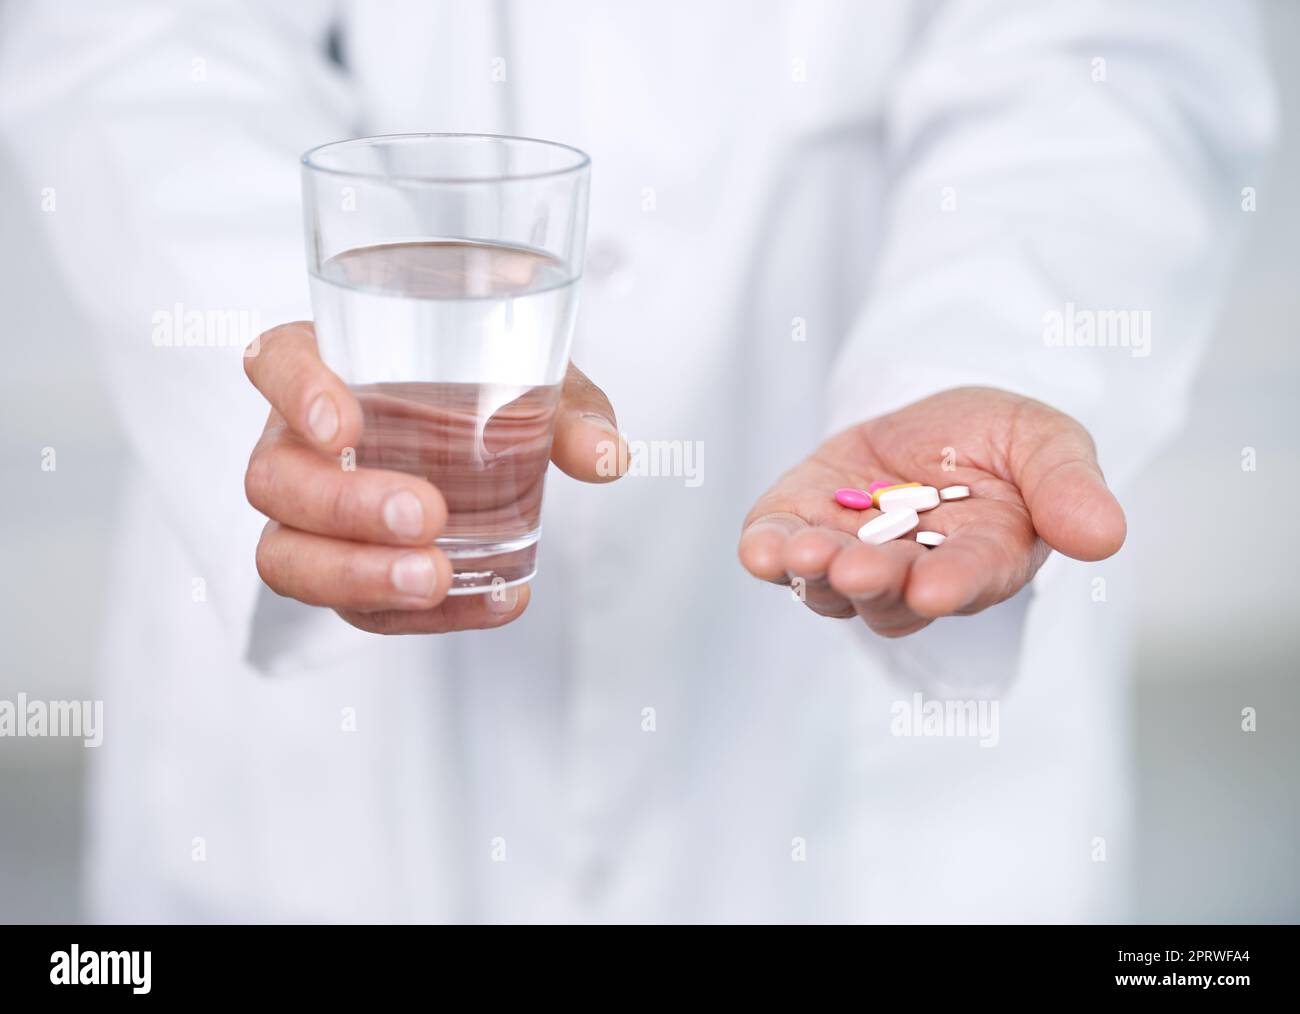 Nehmen Sie zwei davon und rufen Sie mich am Morgen. Ein Arzt hält ein Glas Wasser in der einen Hand und Medikamente in der anderen. Stockfoto